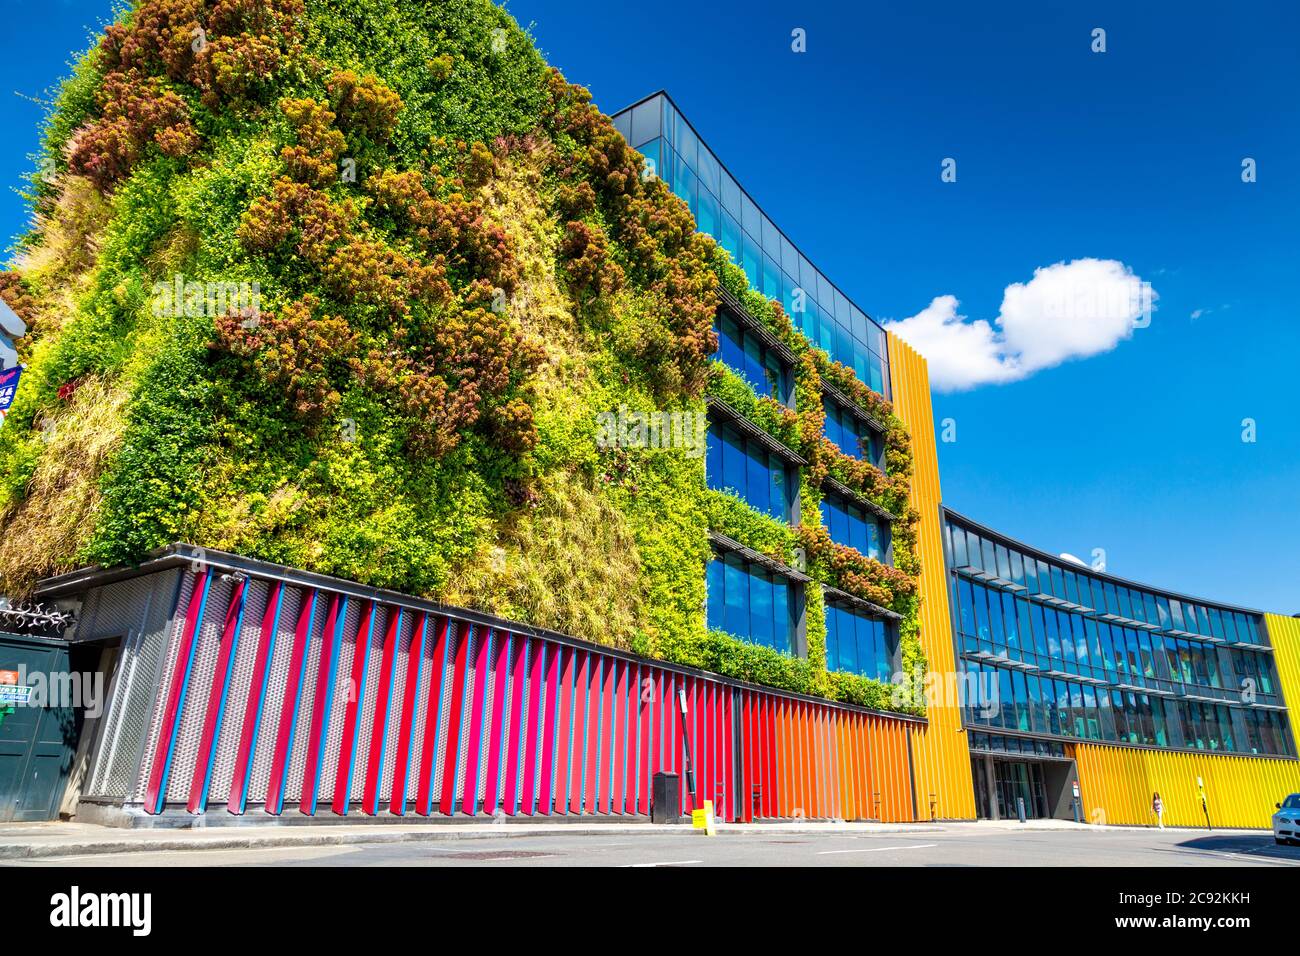 Façade colorée et lumineuse du 17-29 Hawley Crescent immeuble de bureaux contemporain avec jardin vertical, Camden, Londres, Royaume-Uni Banque D'Images